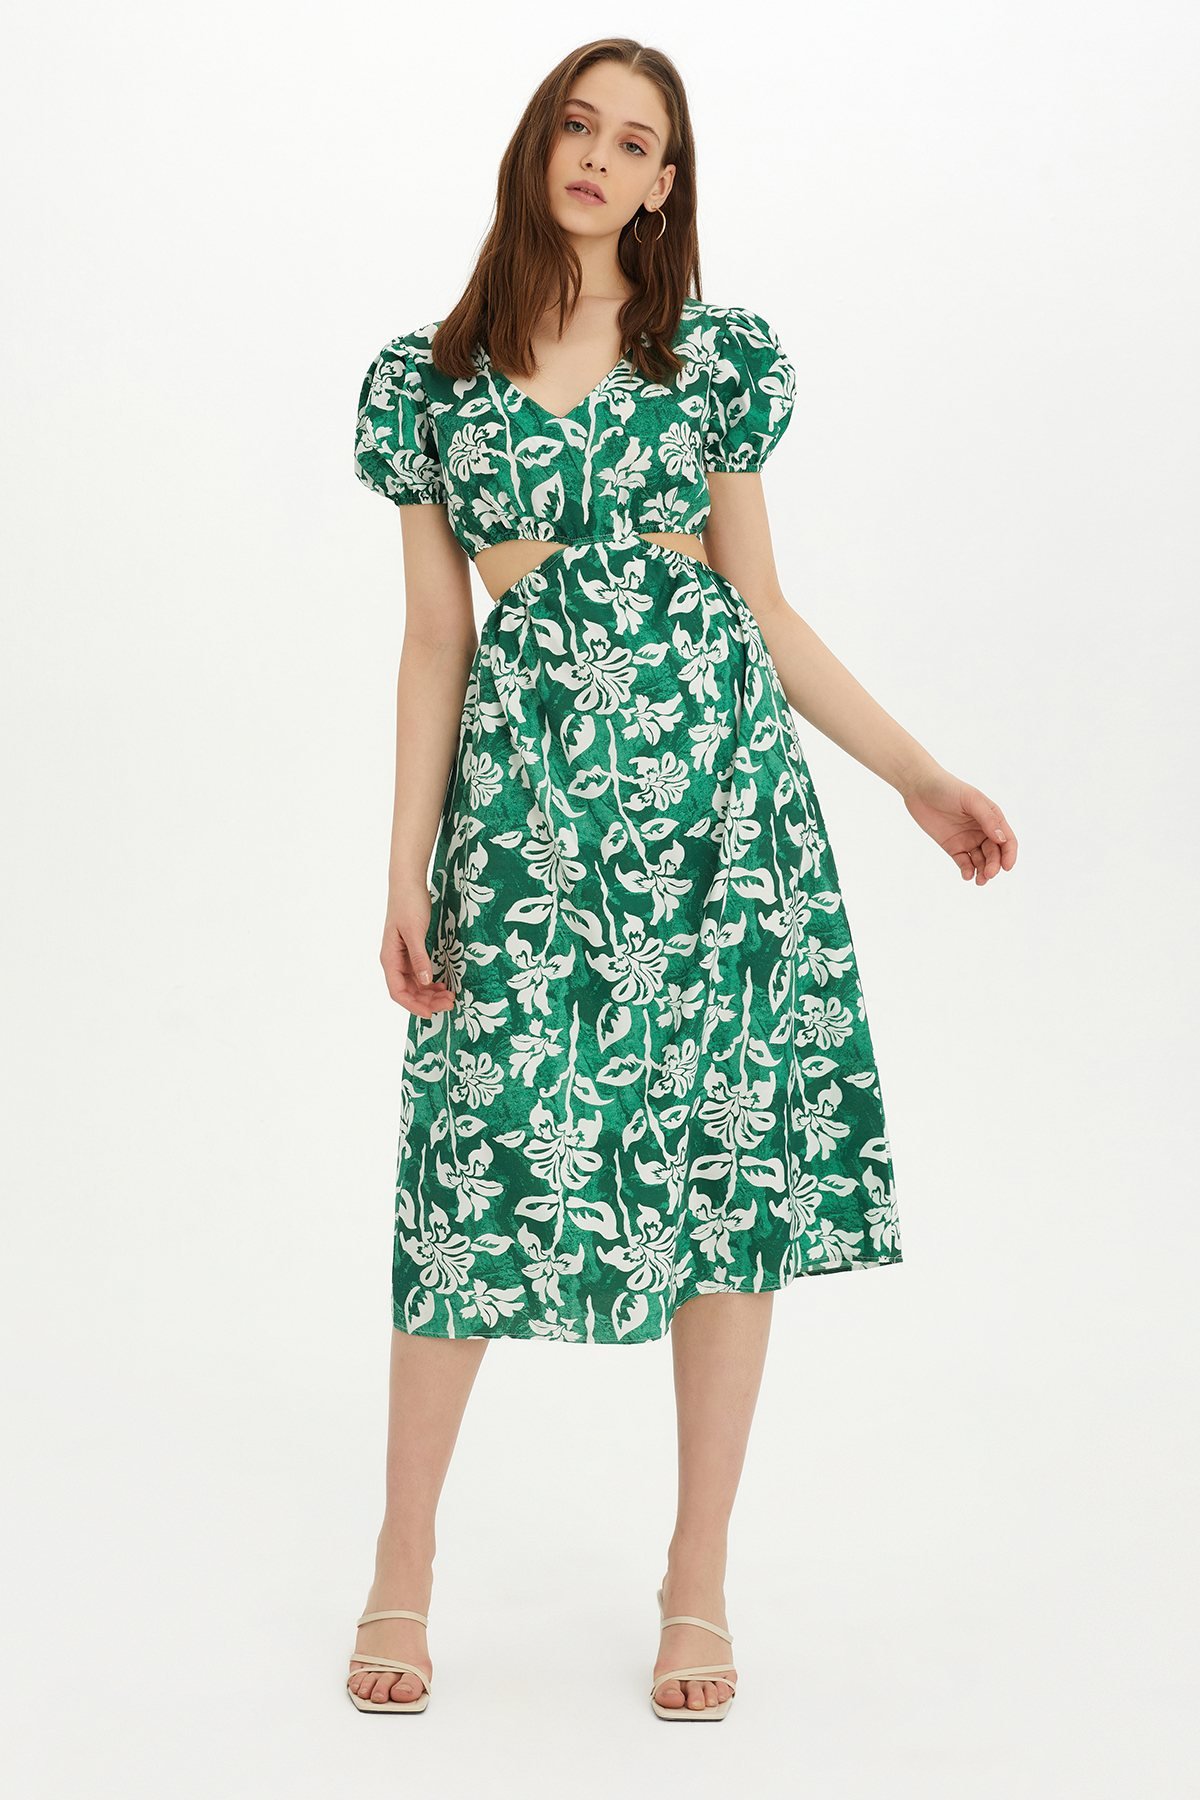 Sherin Kadın Yeşil Çiçek Desenli Bel Dekolteli Yazlık Elbise